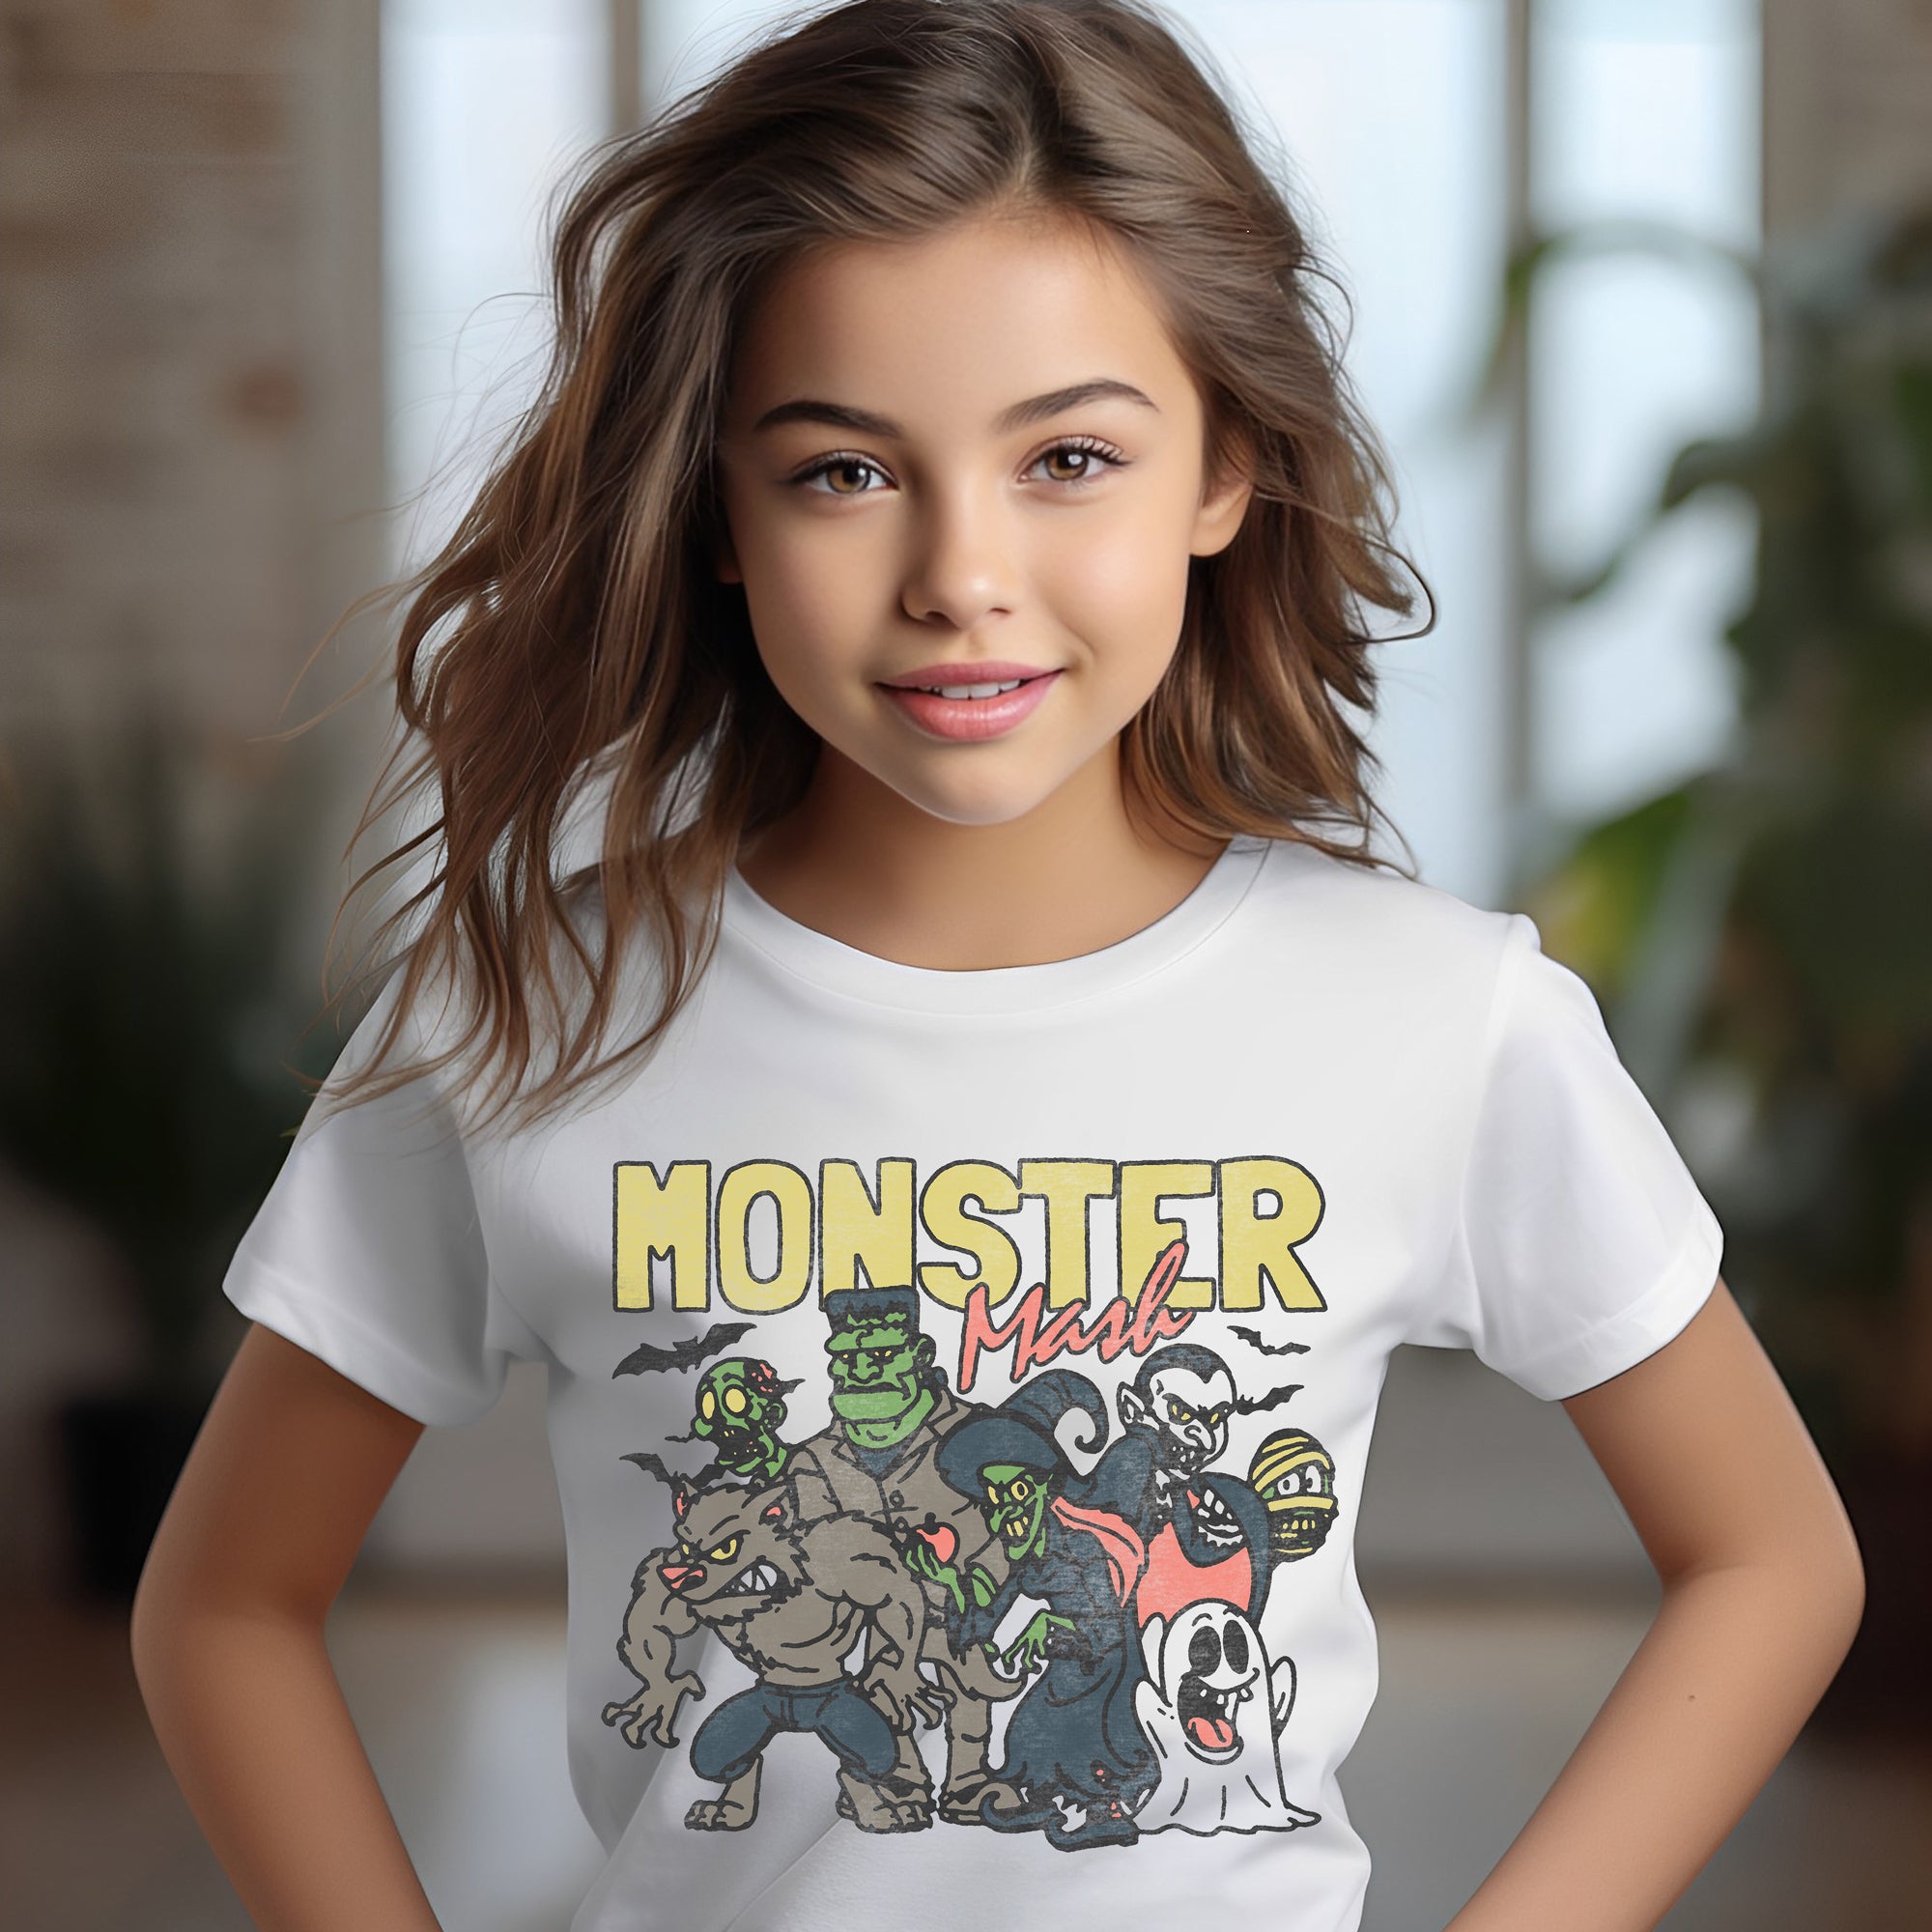 Kids Monster Mash T-Shirt